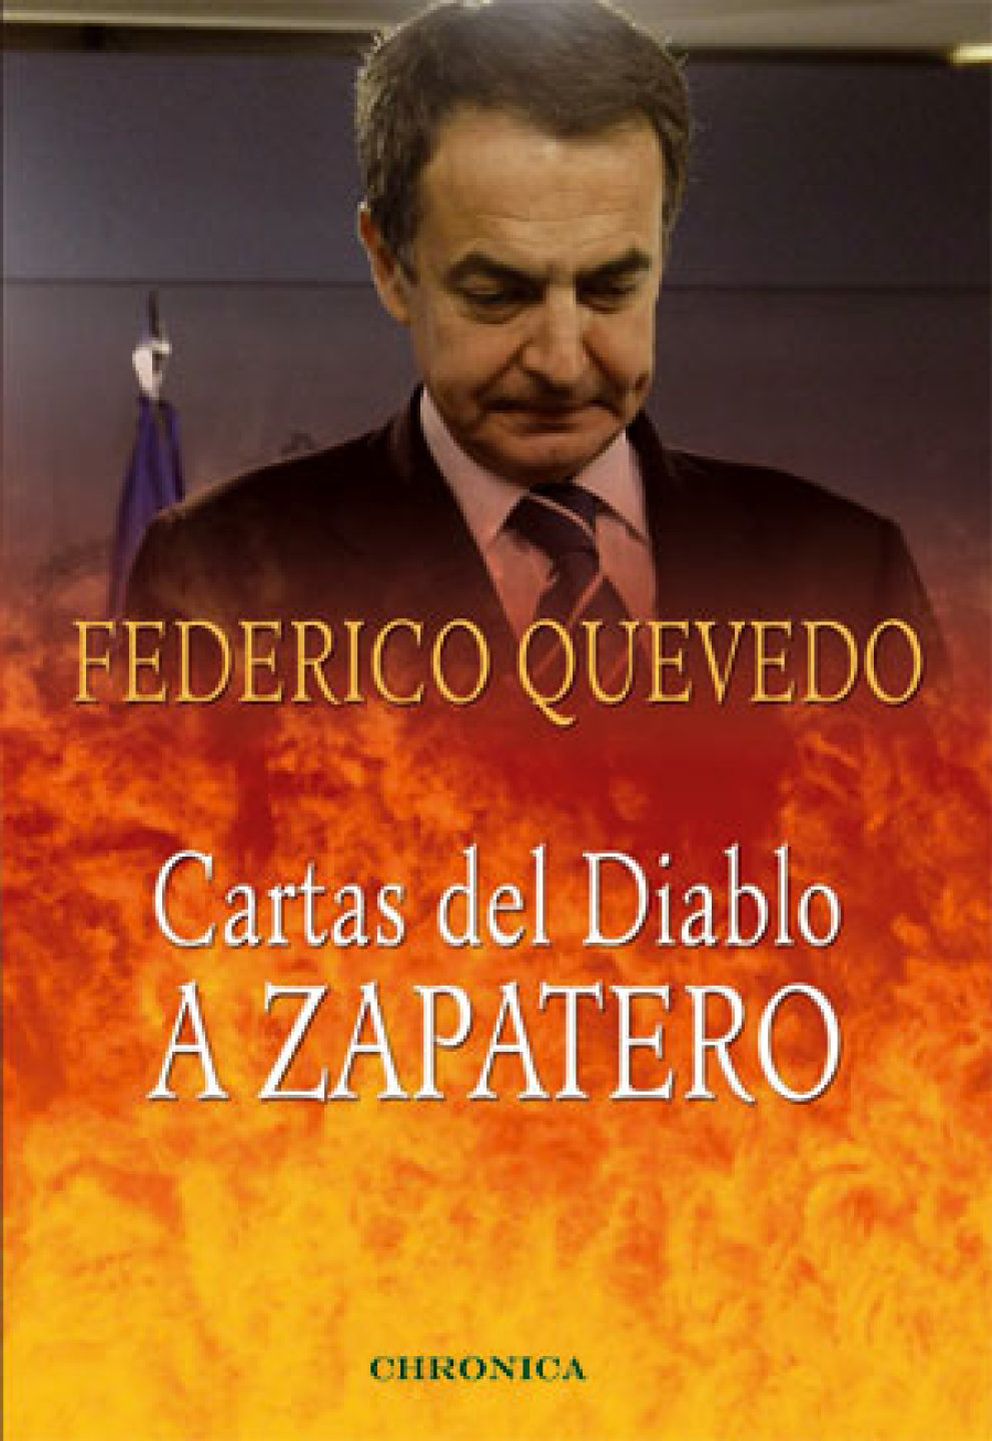 Foto: Federico Quevedo, el ‘diablo de la derecha’ que le escribe cartas a Zapatero